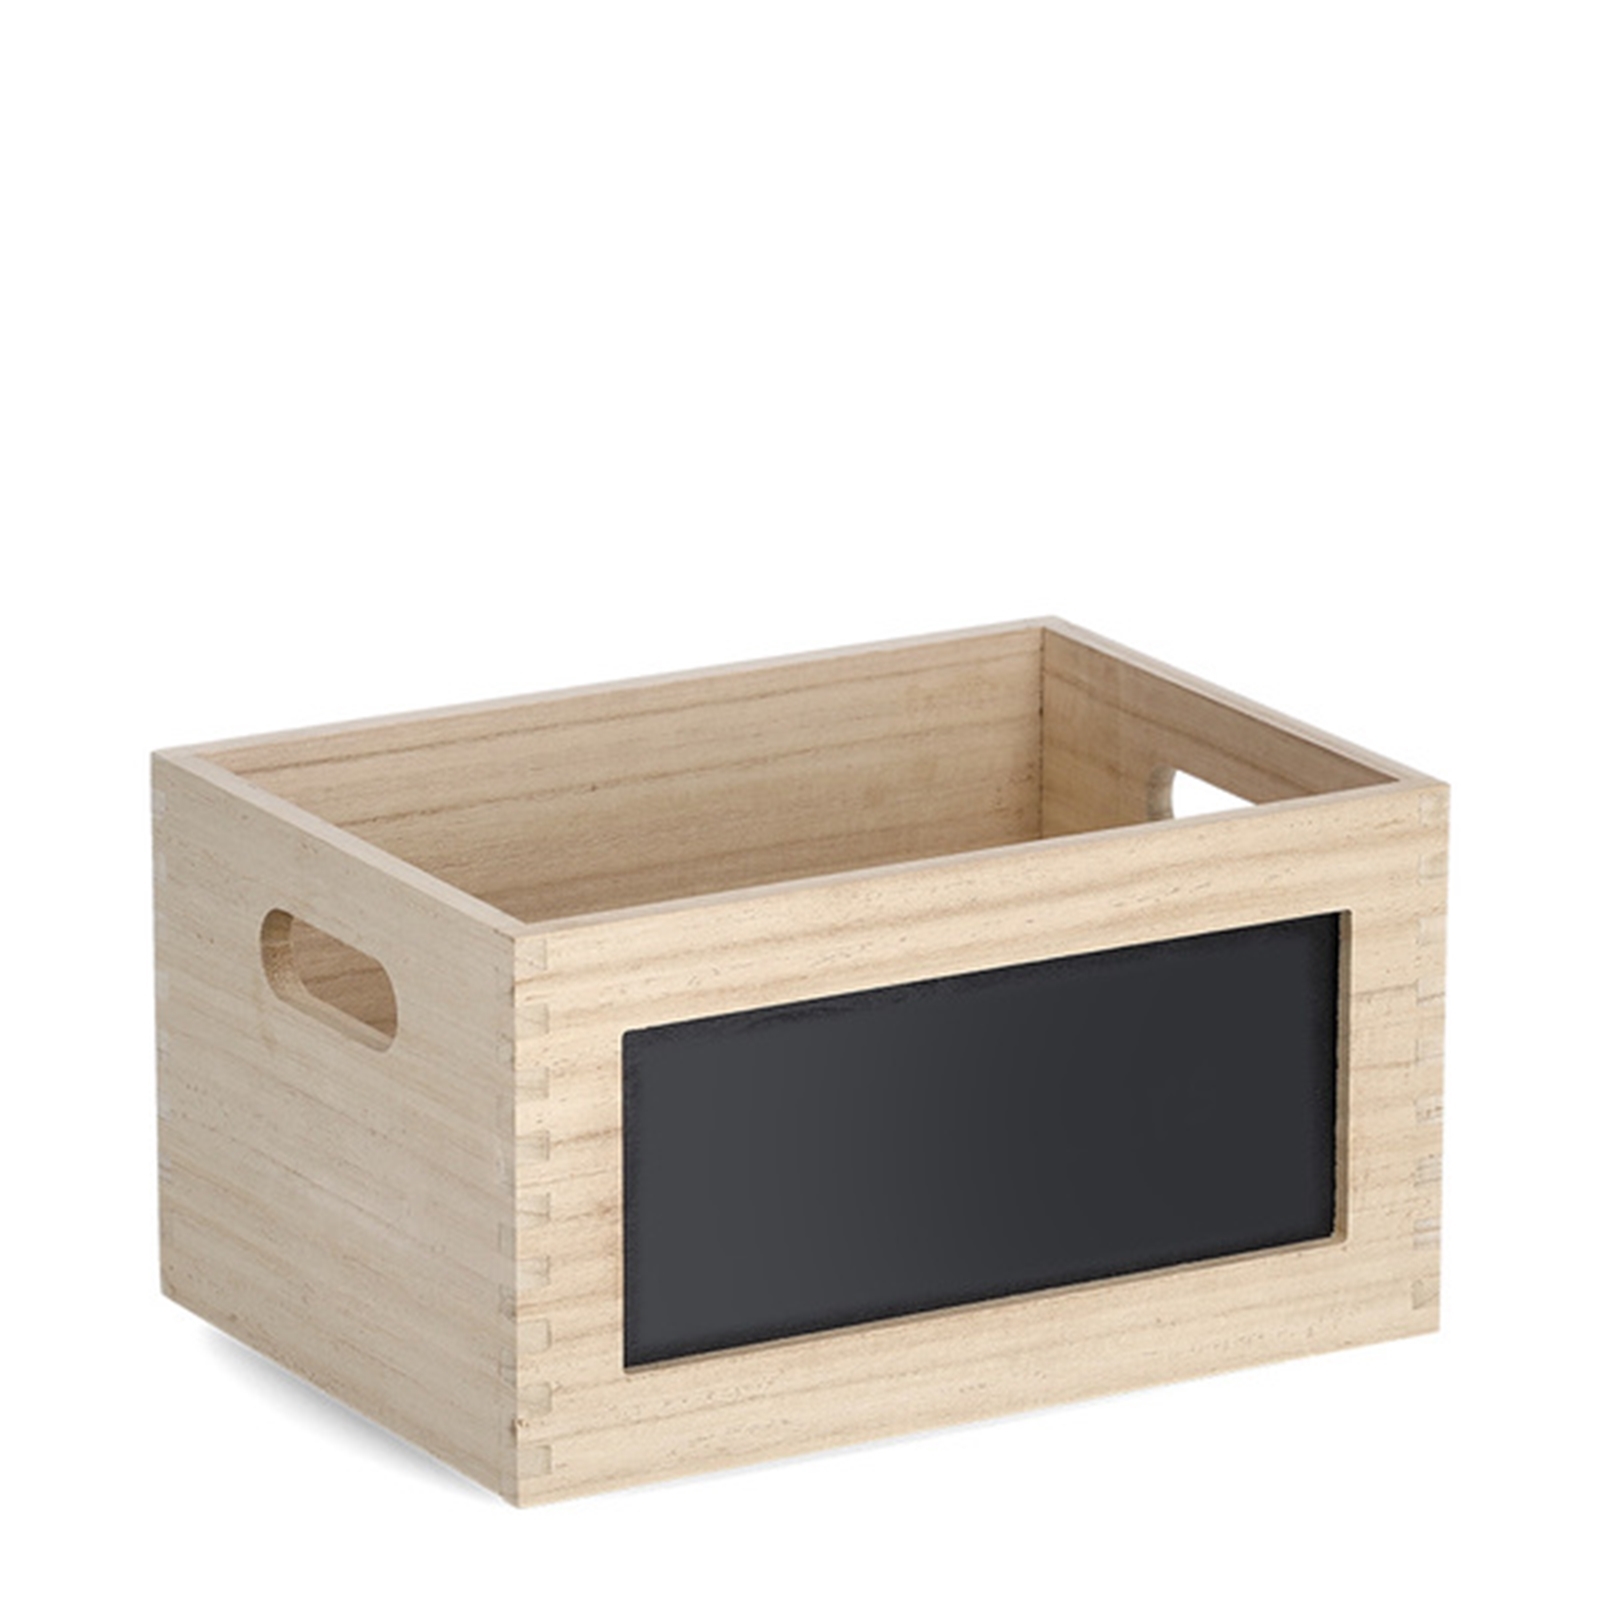 ZELLER Present Holz Allzweckkiste mit Tafel | Aufbewahrungsboxen & Körbe |  Ordnung- & Aufbewahrung | Accessoires | Neuetischkultur